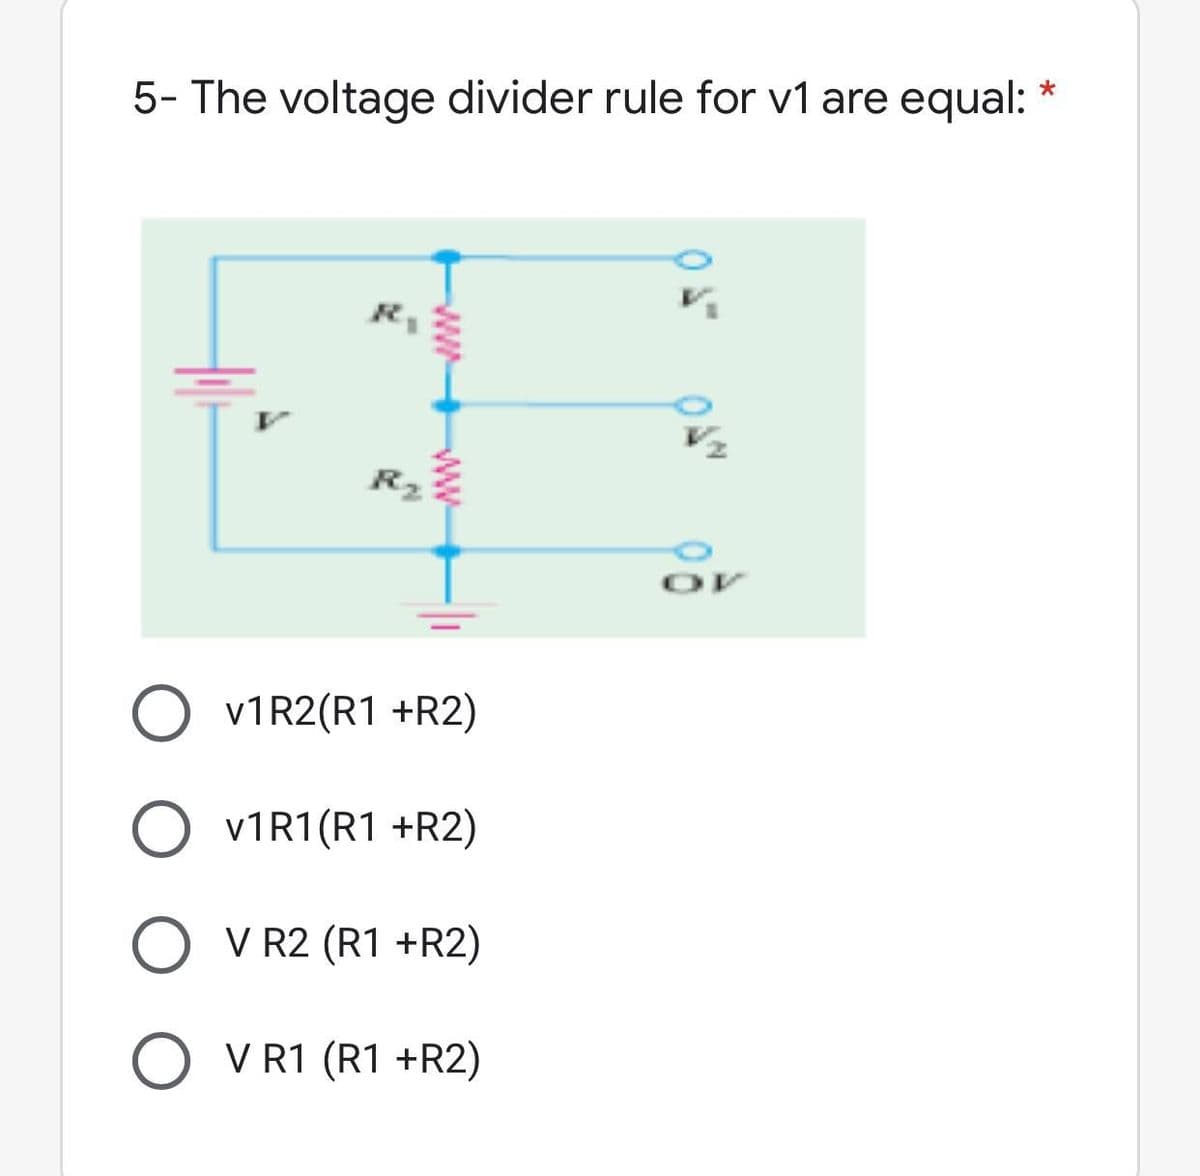 5- The voltage divider rule for v1 are equal:
O V1R2(R1 +R2)
O V1R1 (R1 +R2)
O V R2 (R1 +R2)
O V R1 (R1 +R2)
